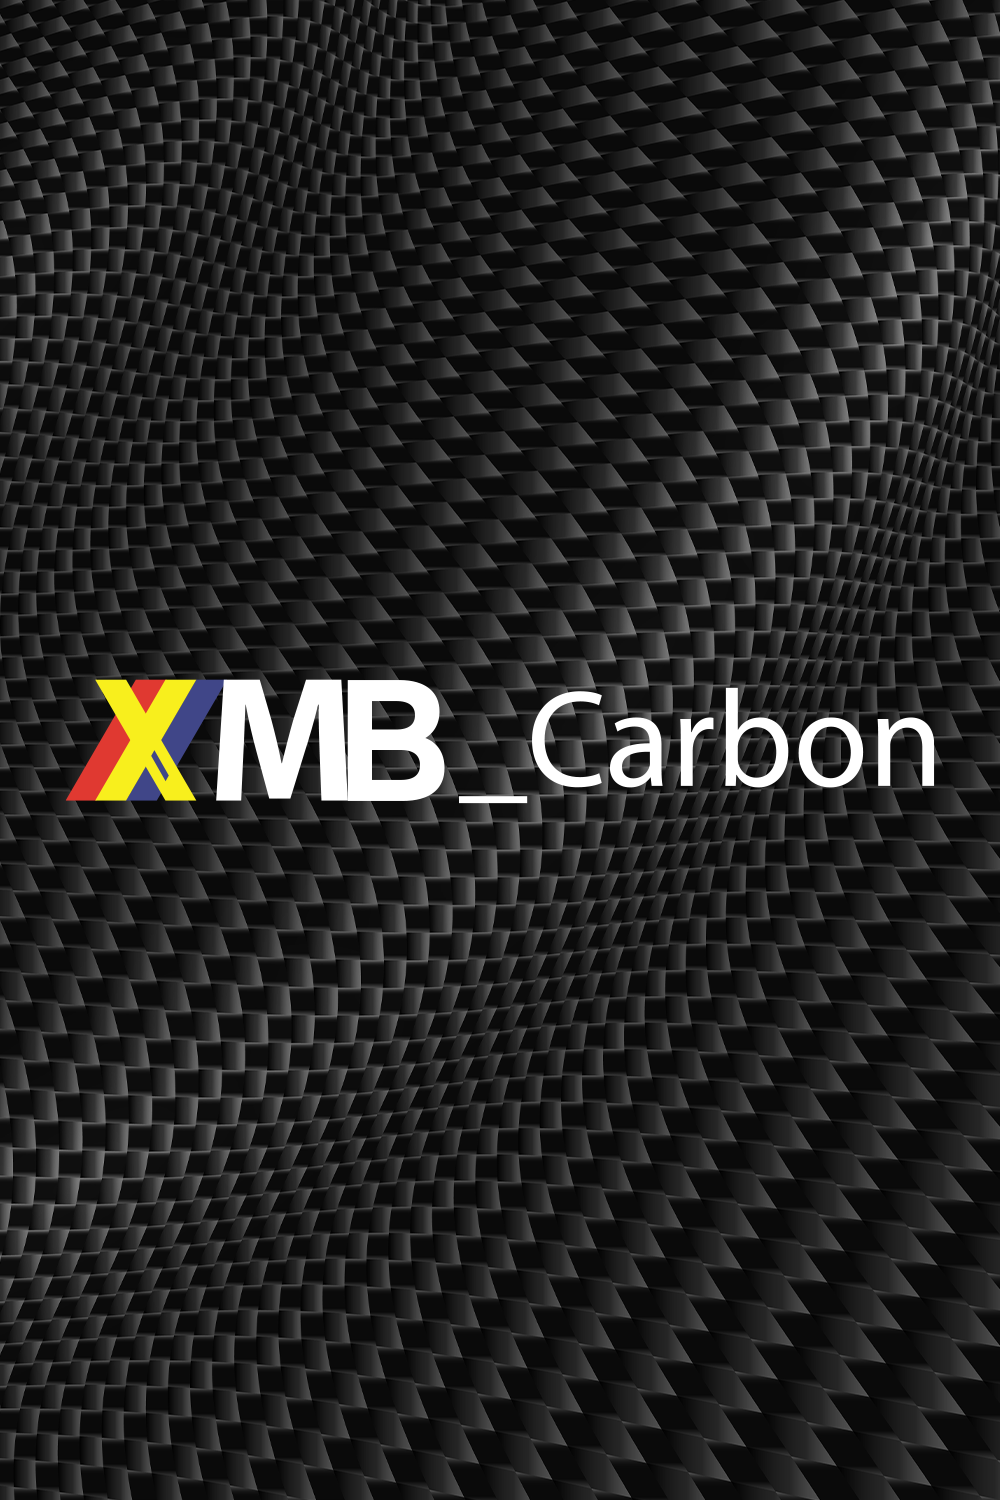 XMB_Carbon - Casting | 10-25lb - 7'3